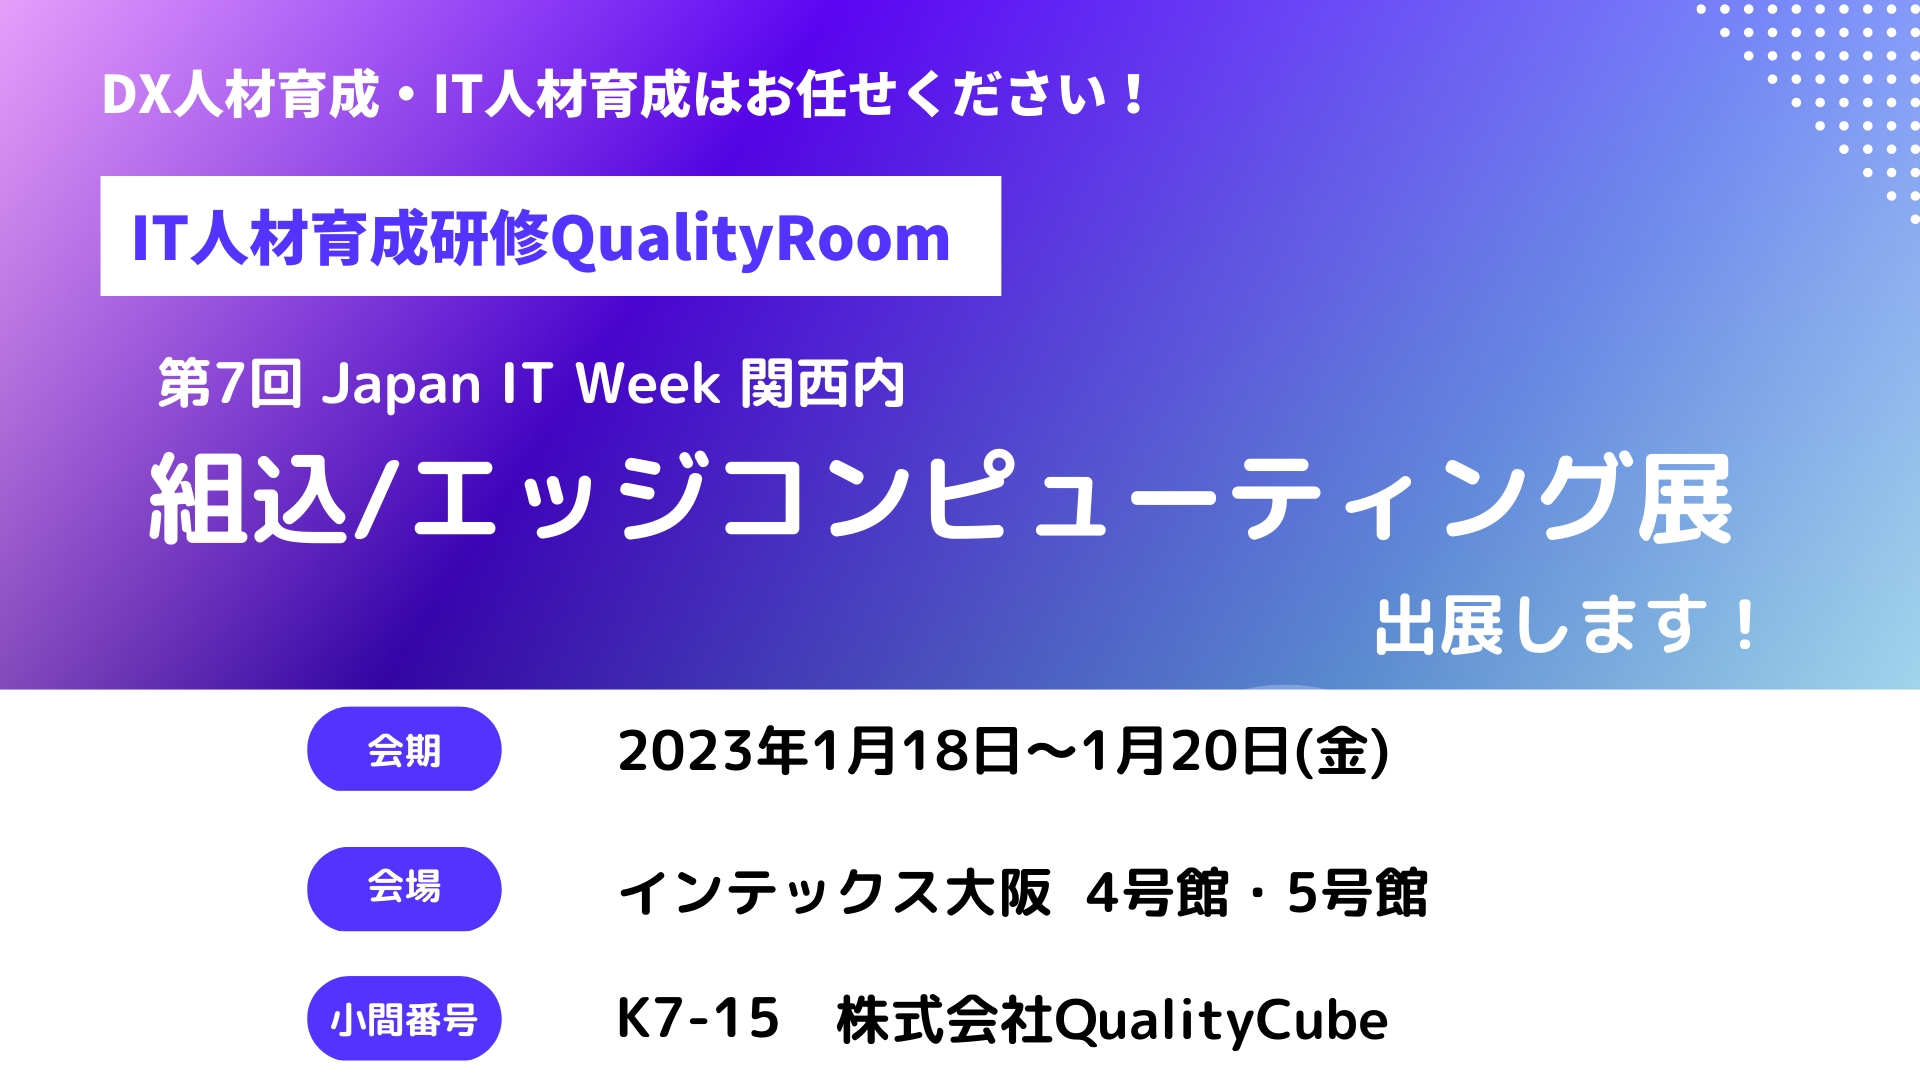 『Japan IT Week 関西』出展のお知らせ